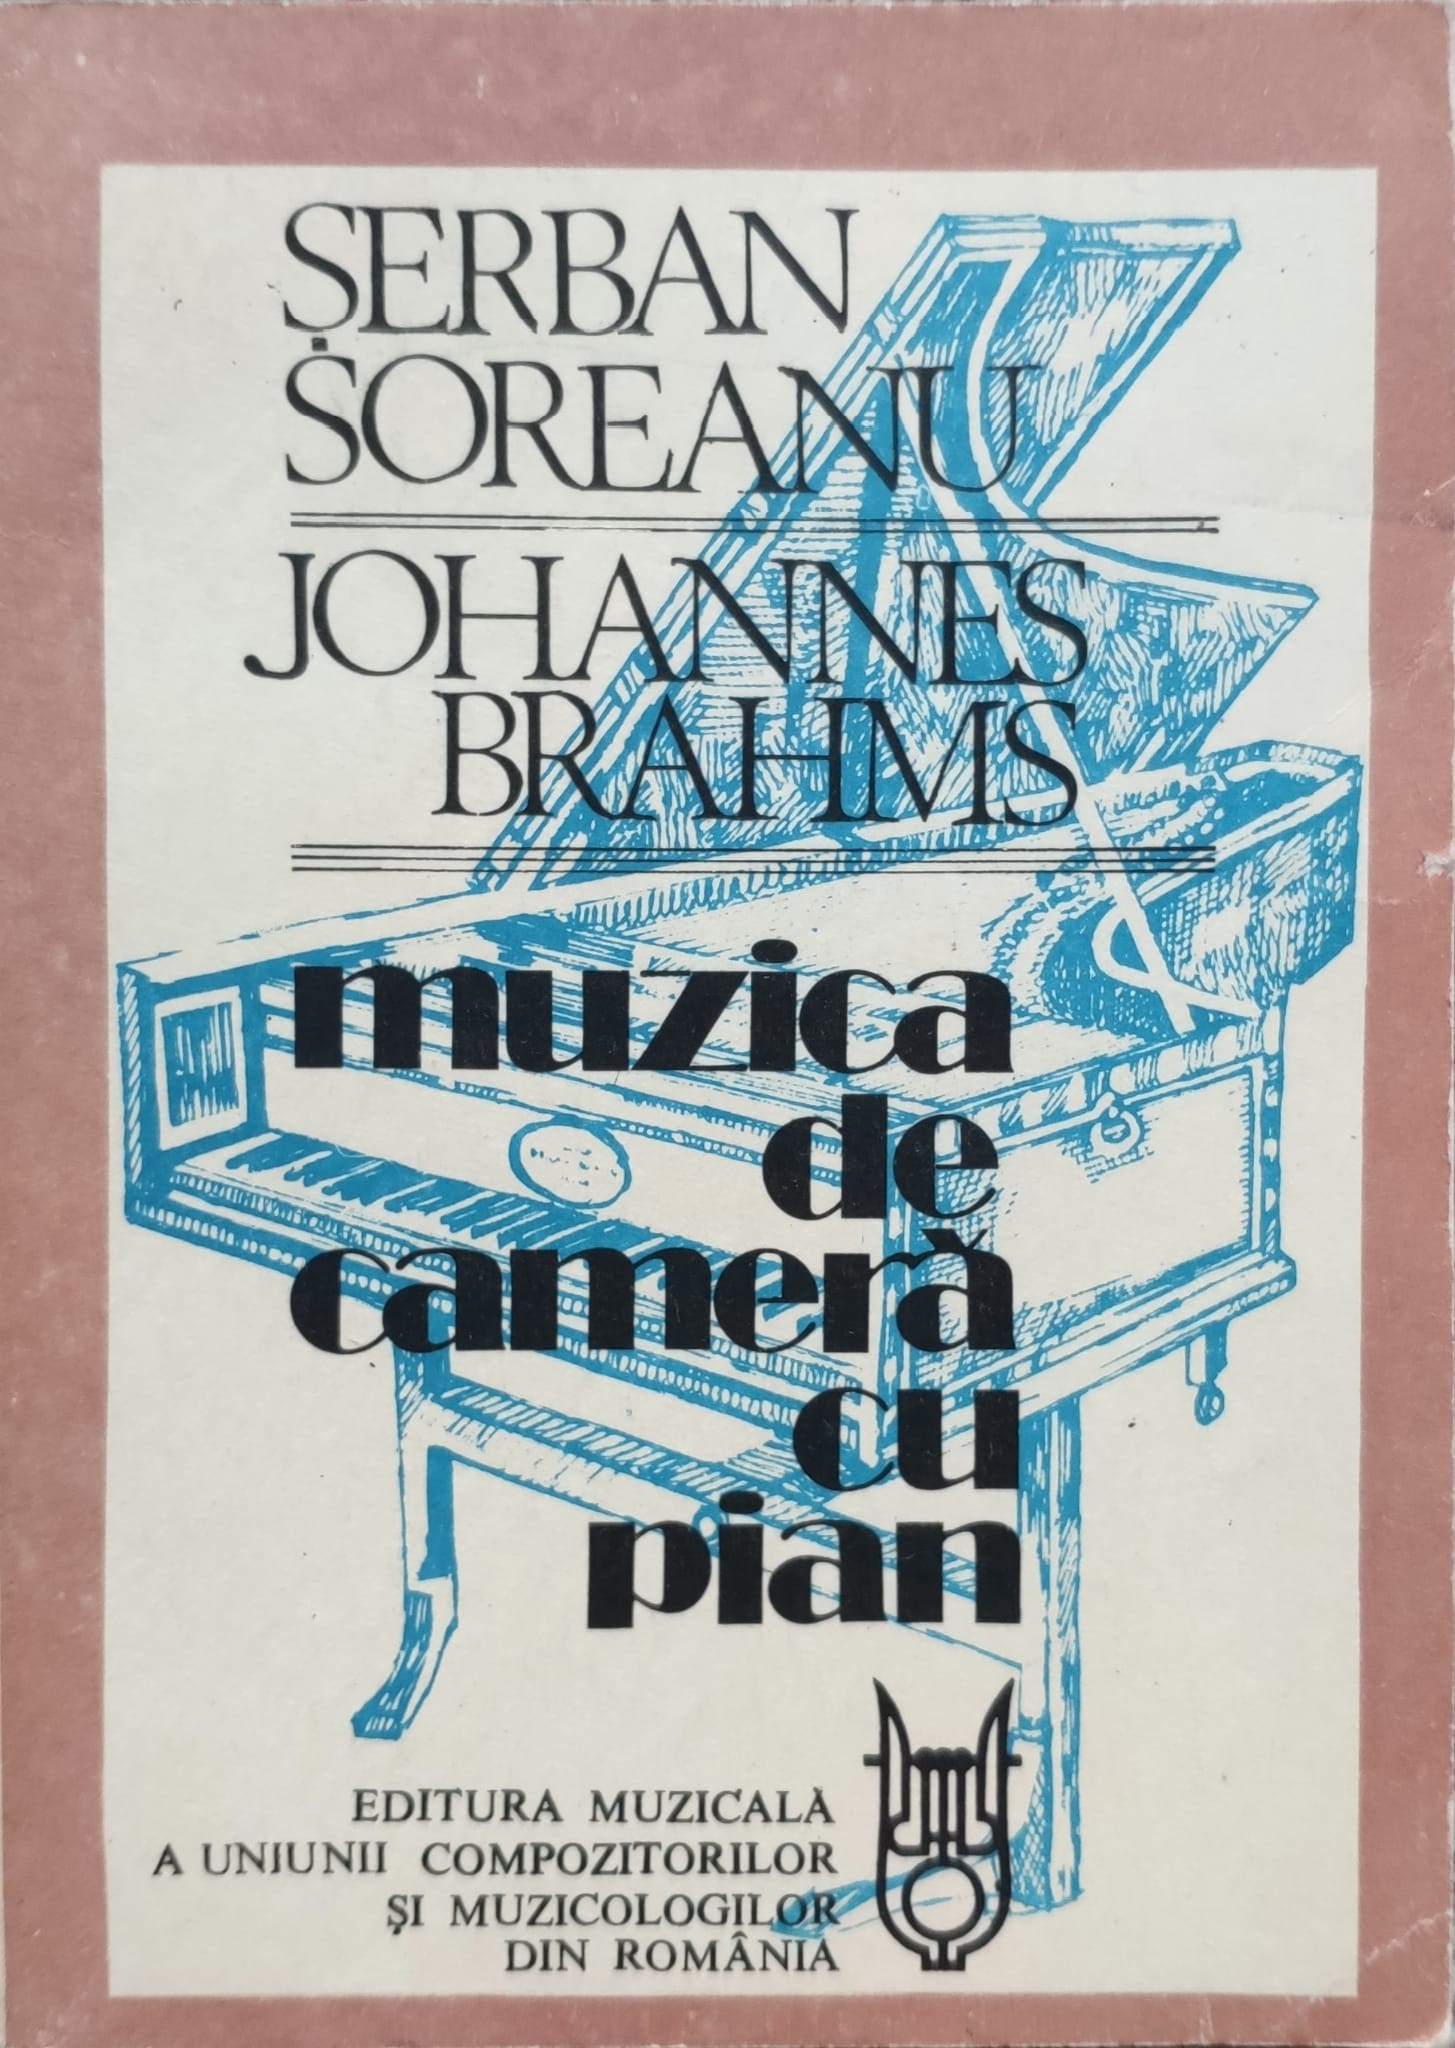 johannes brahms muzica de camera cu pian                                                             serban soreanu                                                                                      